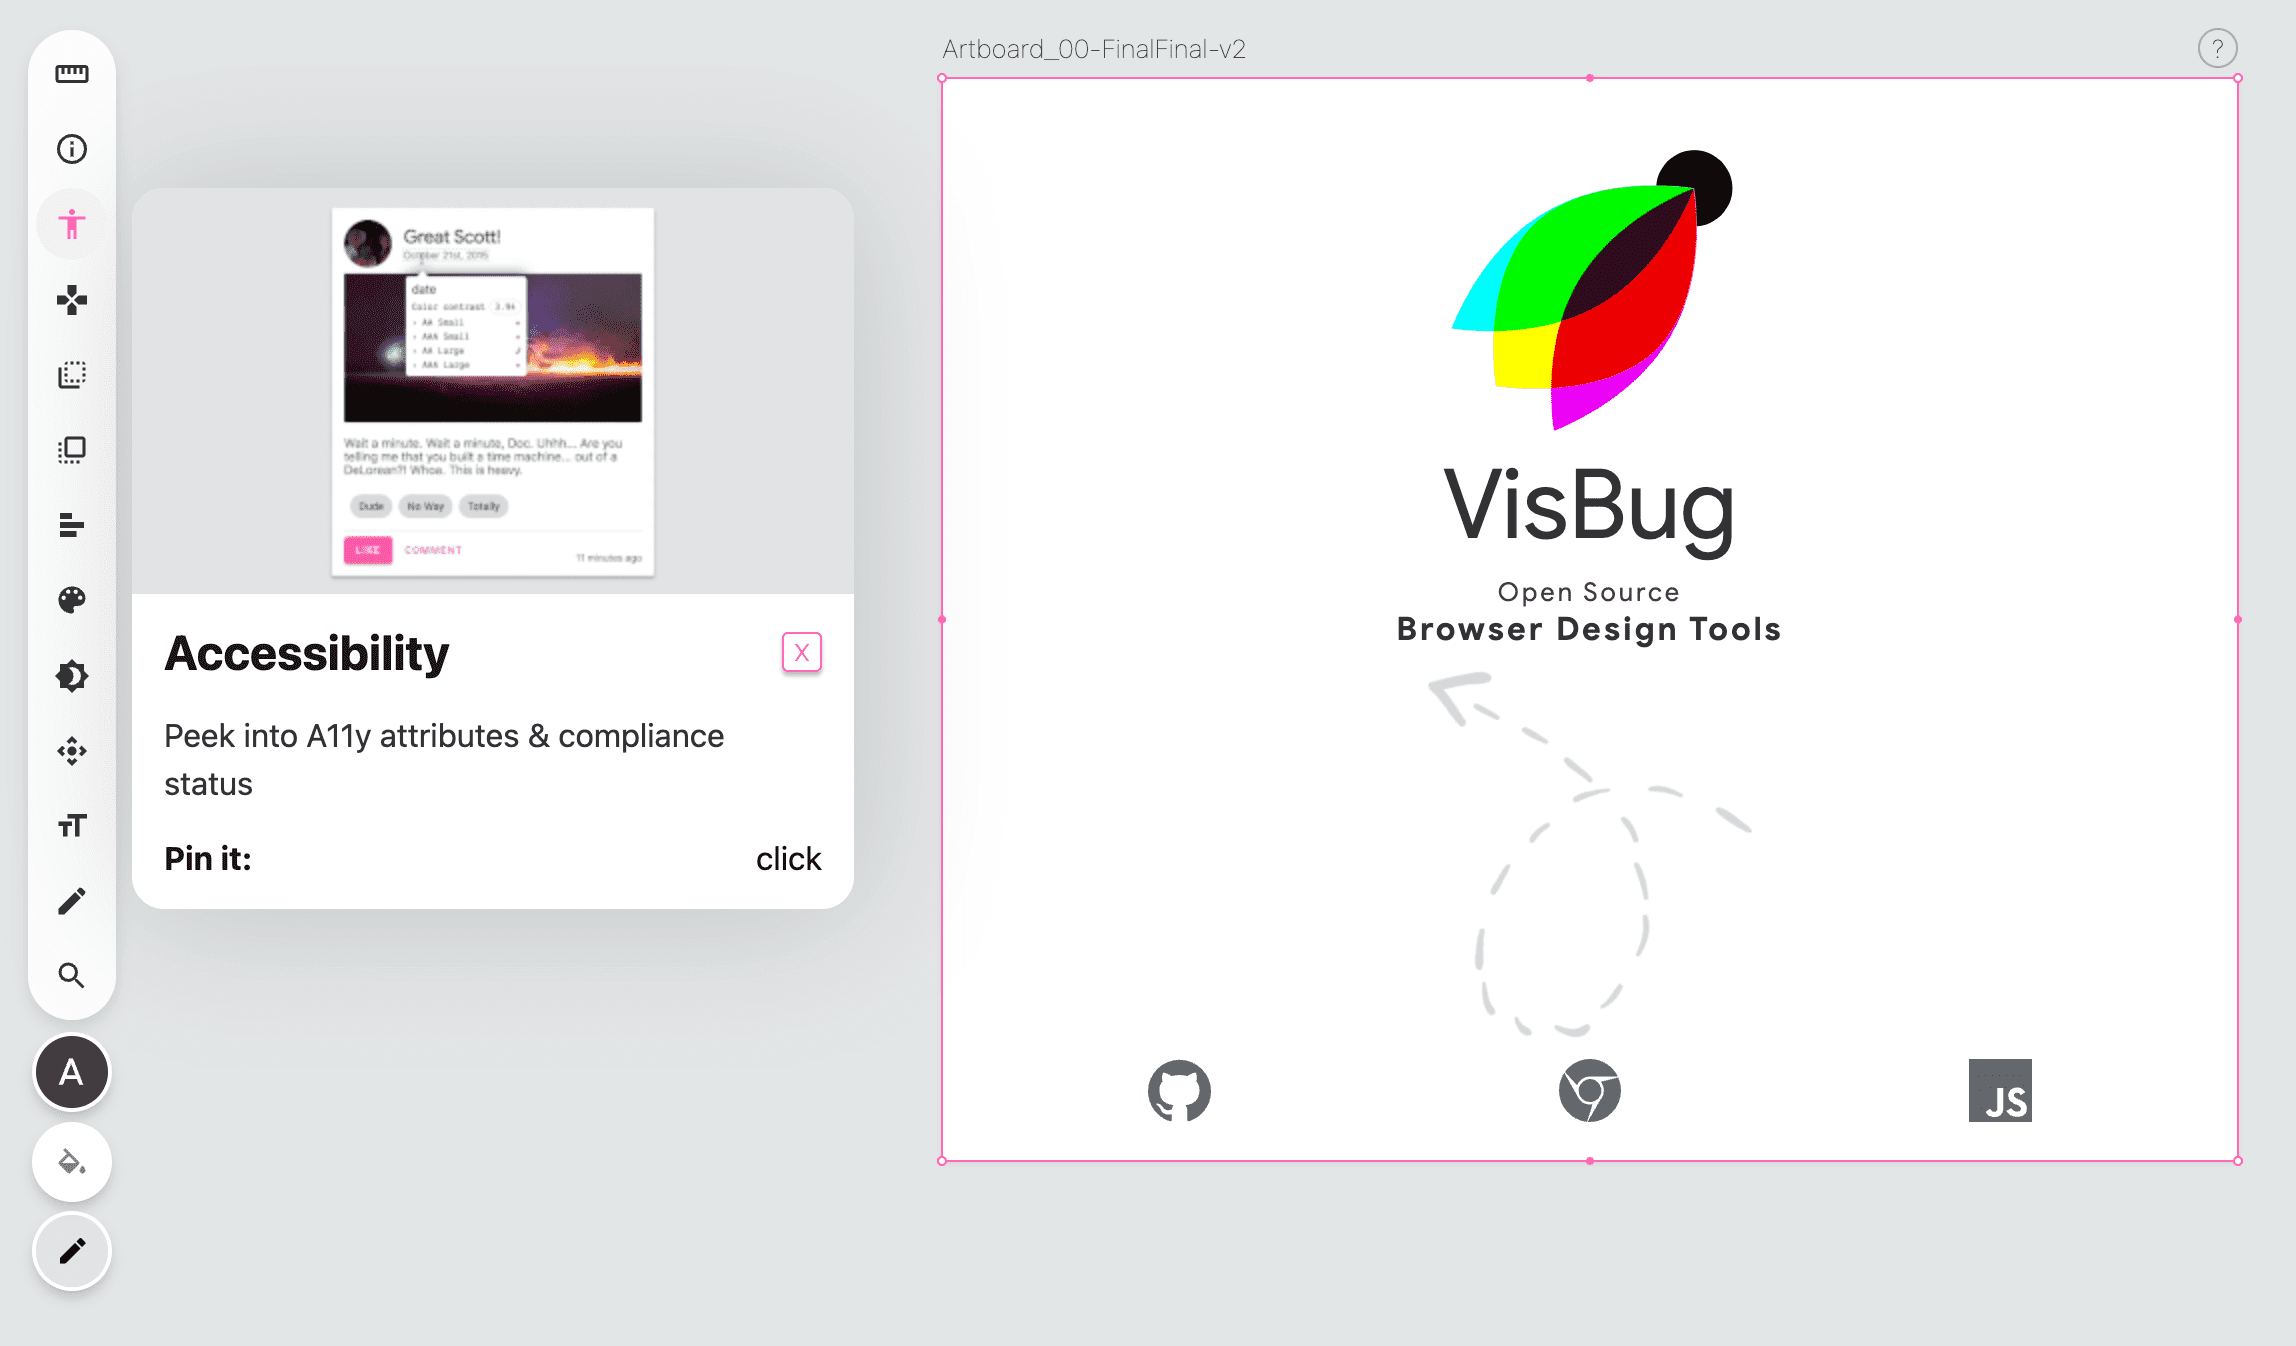 Ảnh chụp màn hình thanh công cụ VisBug ở bên trái của một trang trống, biểu tượng công cụ hỗ trợ tiếp cận có màu hồng và một cửa sổ bật lên đưa ra hướng dẫn về công cụ này.